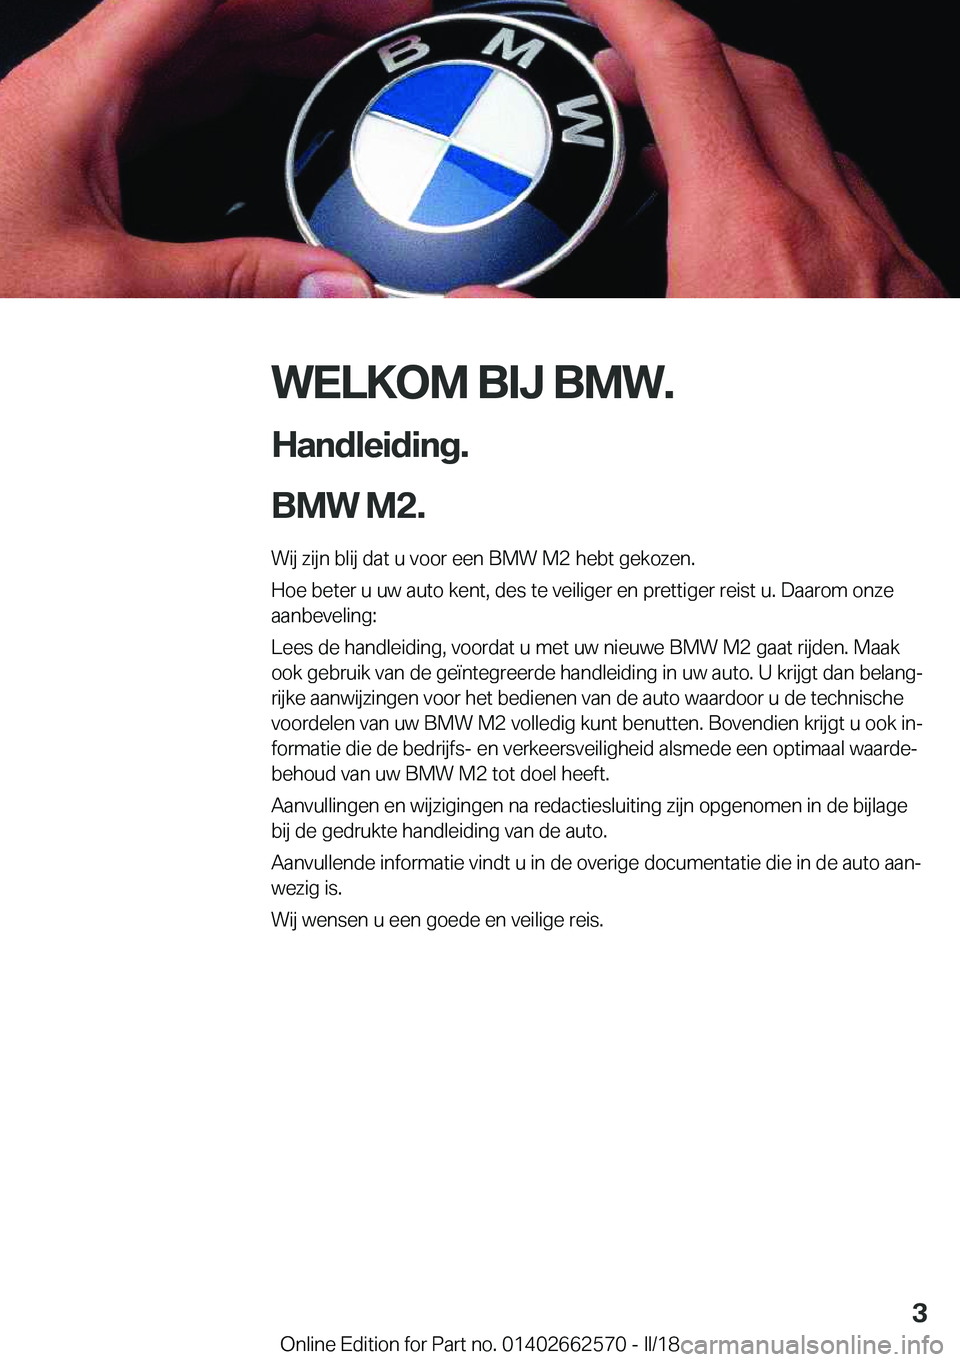 BMW M2 2018  Instructieboekjes (in Dutch) �W�E�L�K�O�M��B�I�J��B�M�W�.
�H�a�n�d�l�e�i�d�i�n�g�.
�B�M�W��M�2�.� �W�i�j� �z�i�j�n� �b�l�i�j� �d�a�t� �u� �v�o�o�r� �e�e�n� �B�M�W� �M�2� �h�e�b�t� �g�e�k�o�z�e�n�.
�H�o�e� �b�e�t�e�r� �u� �u�w